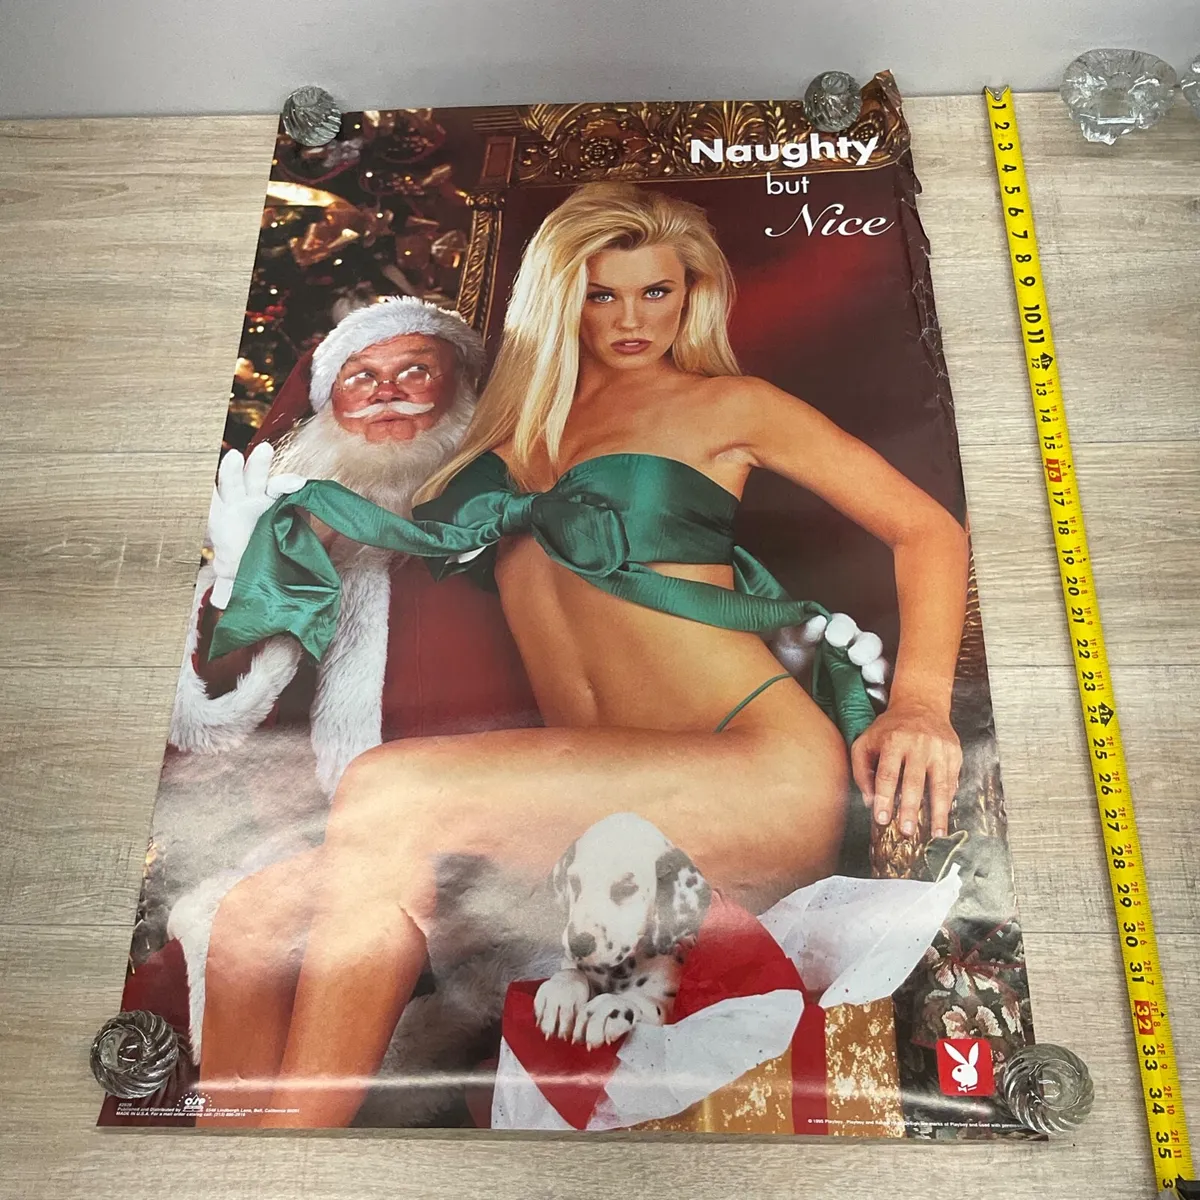 benjamin tischer recommends Jenny Mccarthy Nude Santa